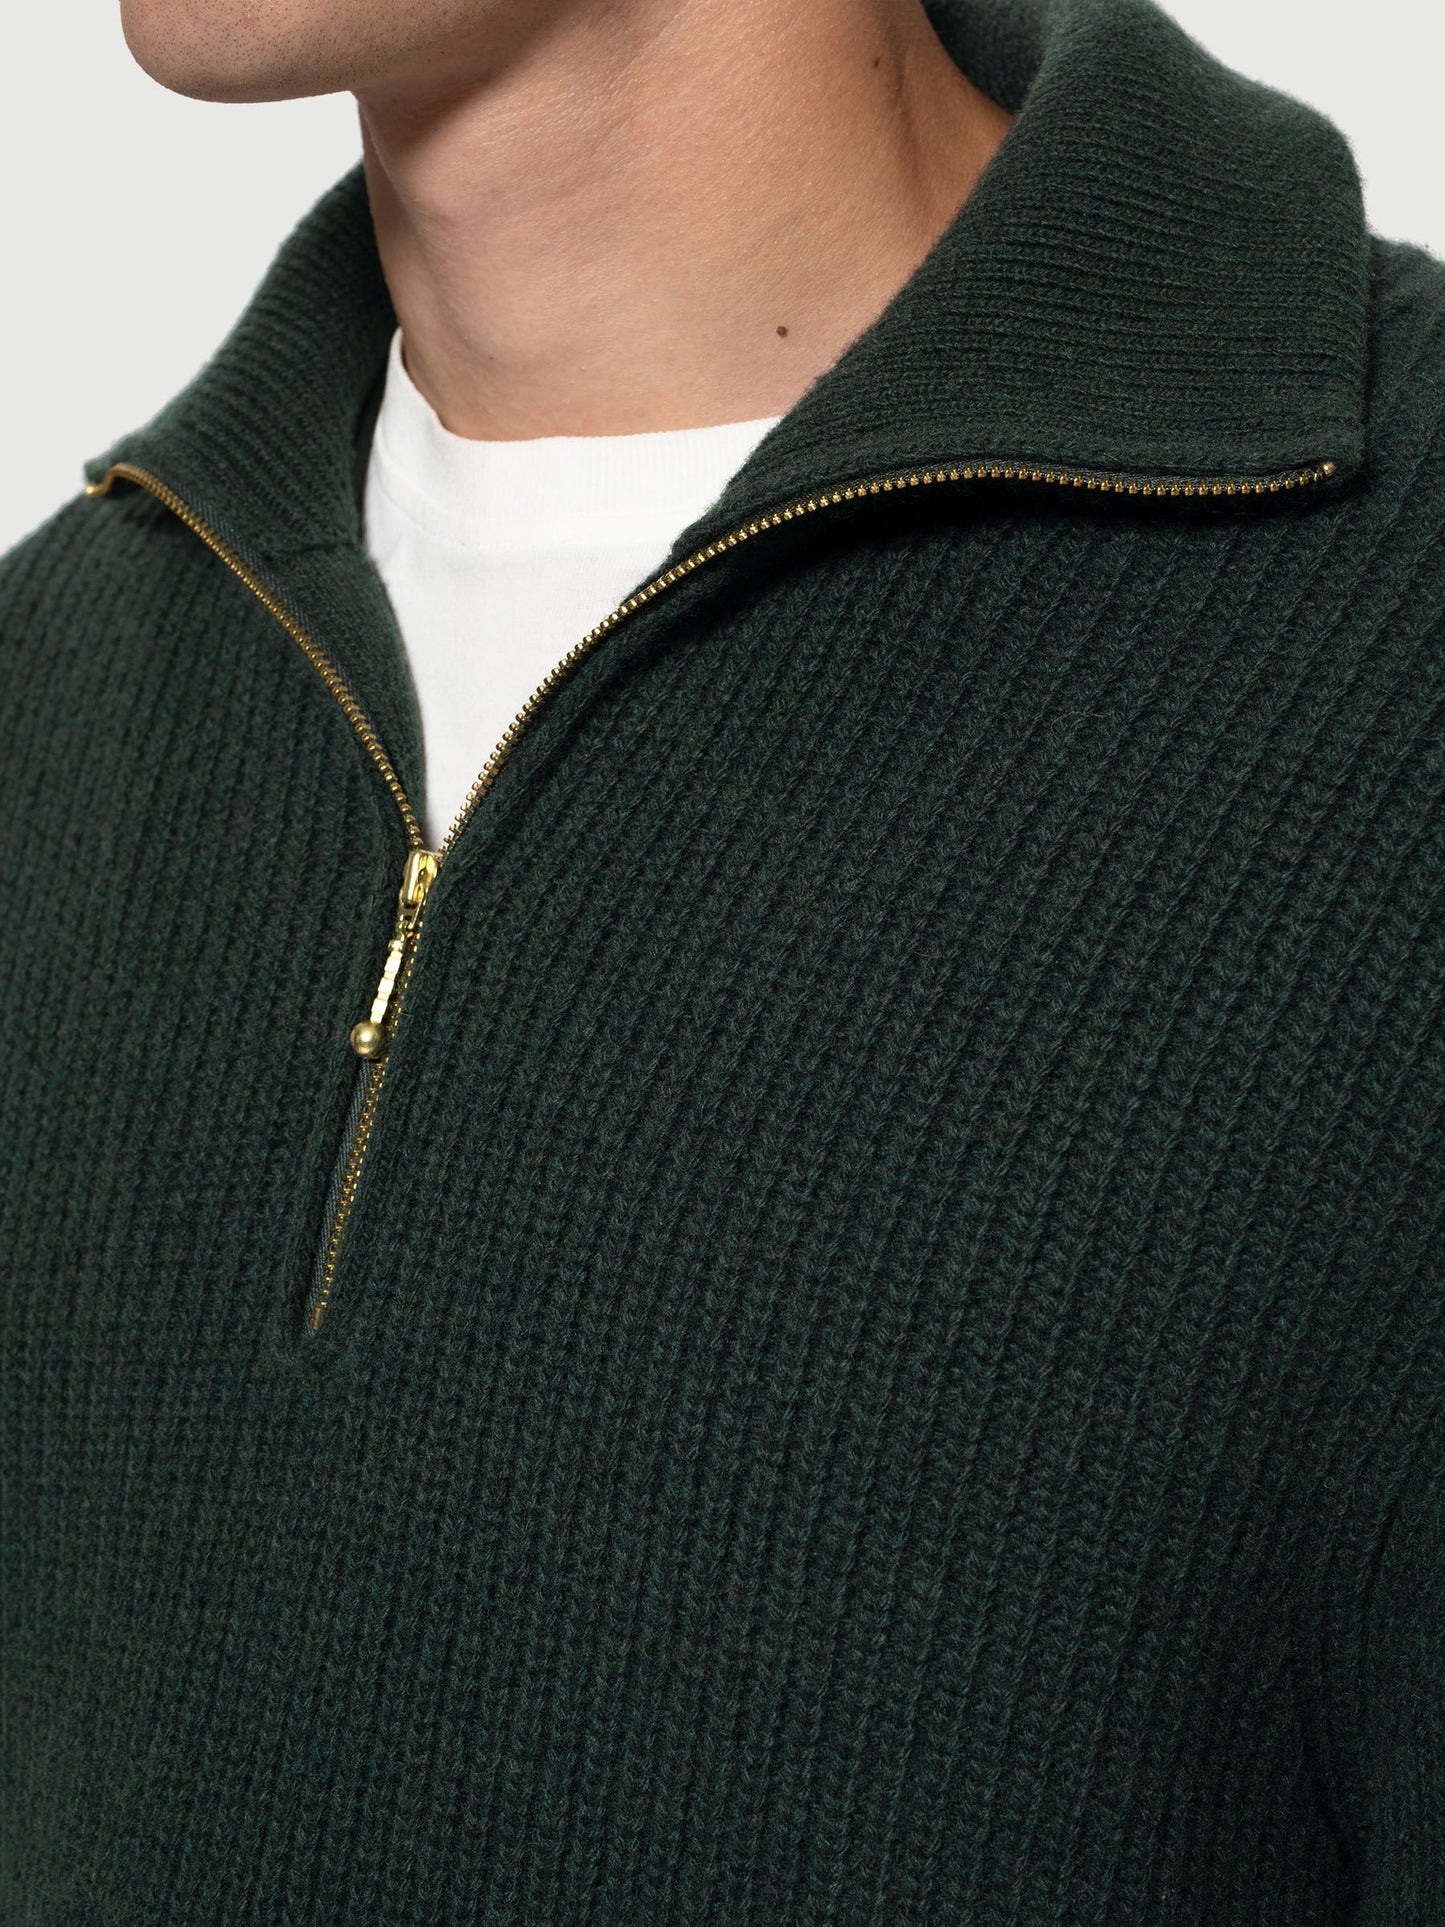 August Zip Sweater